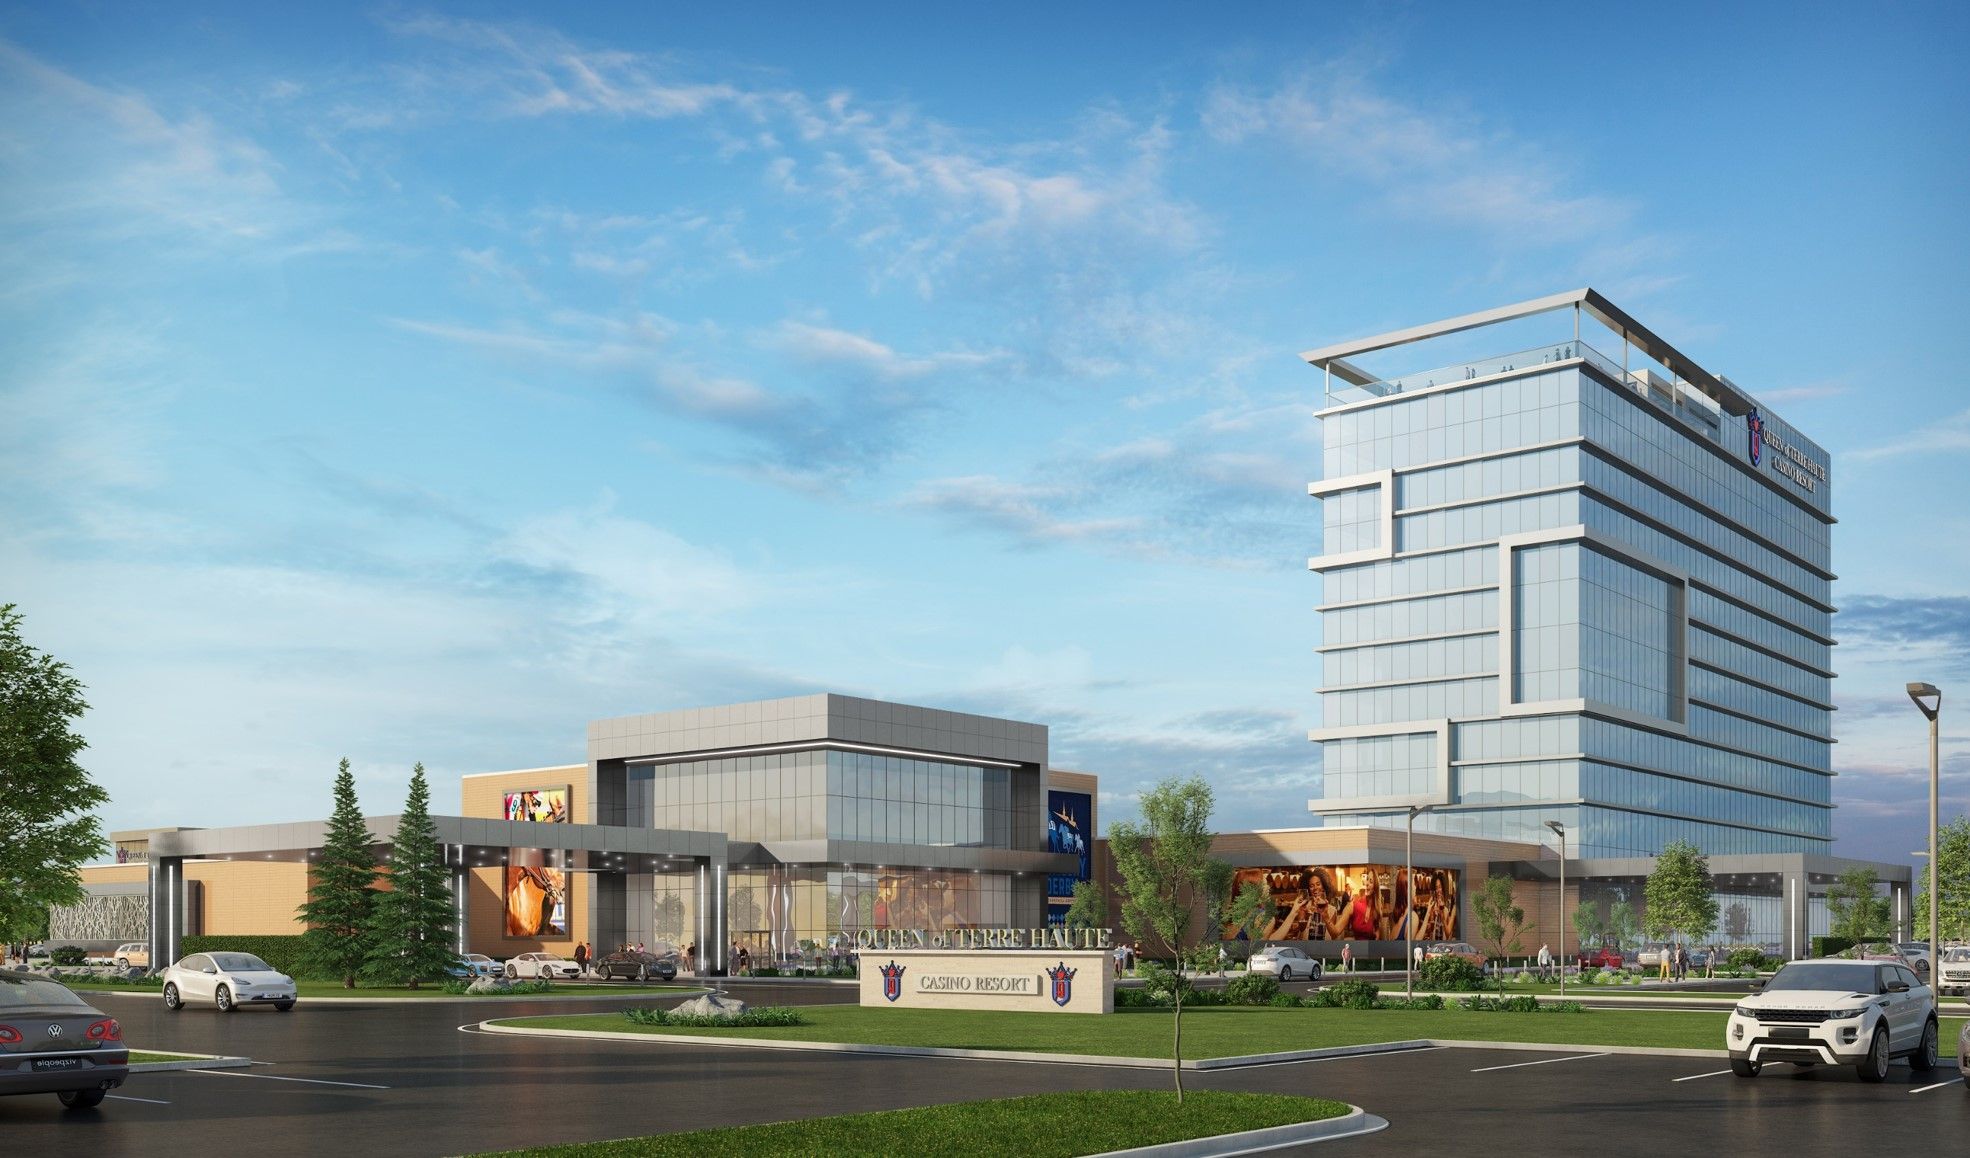 Exterior rendering of the Queen of Terre Haute Casino Resort.